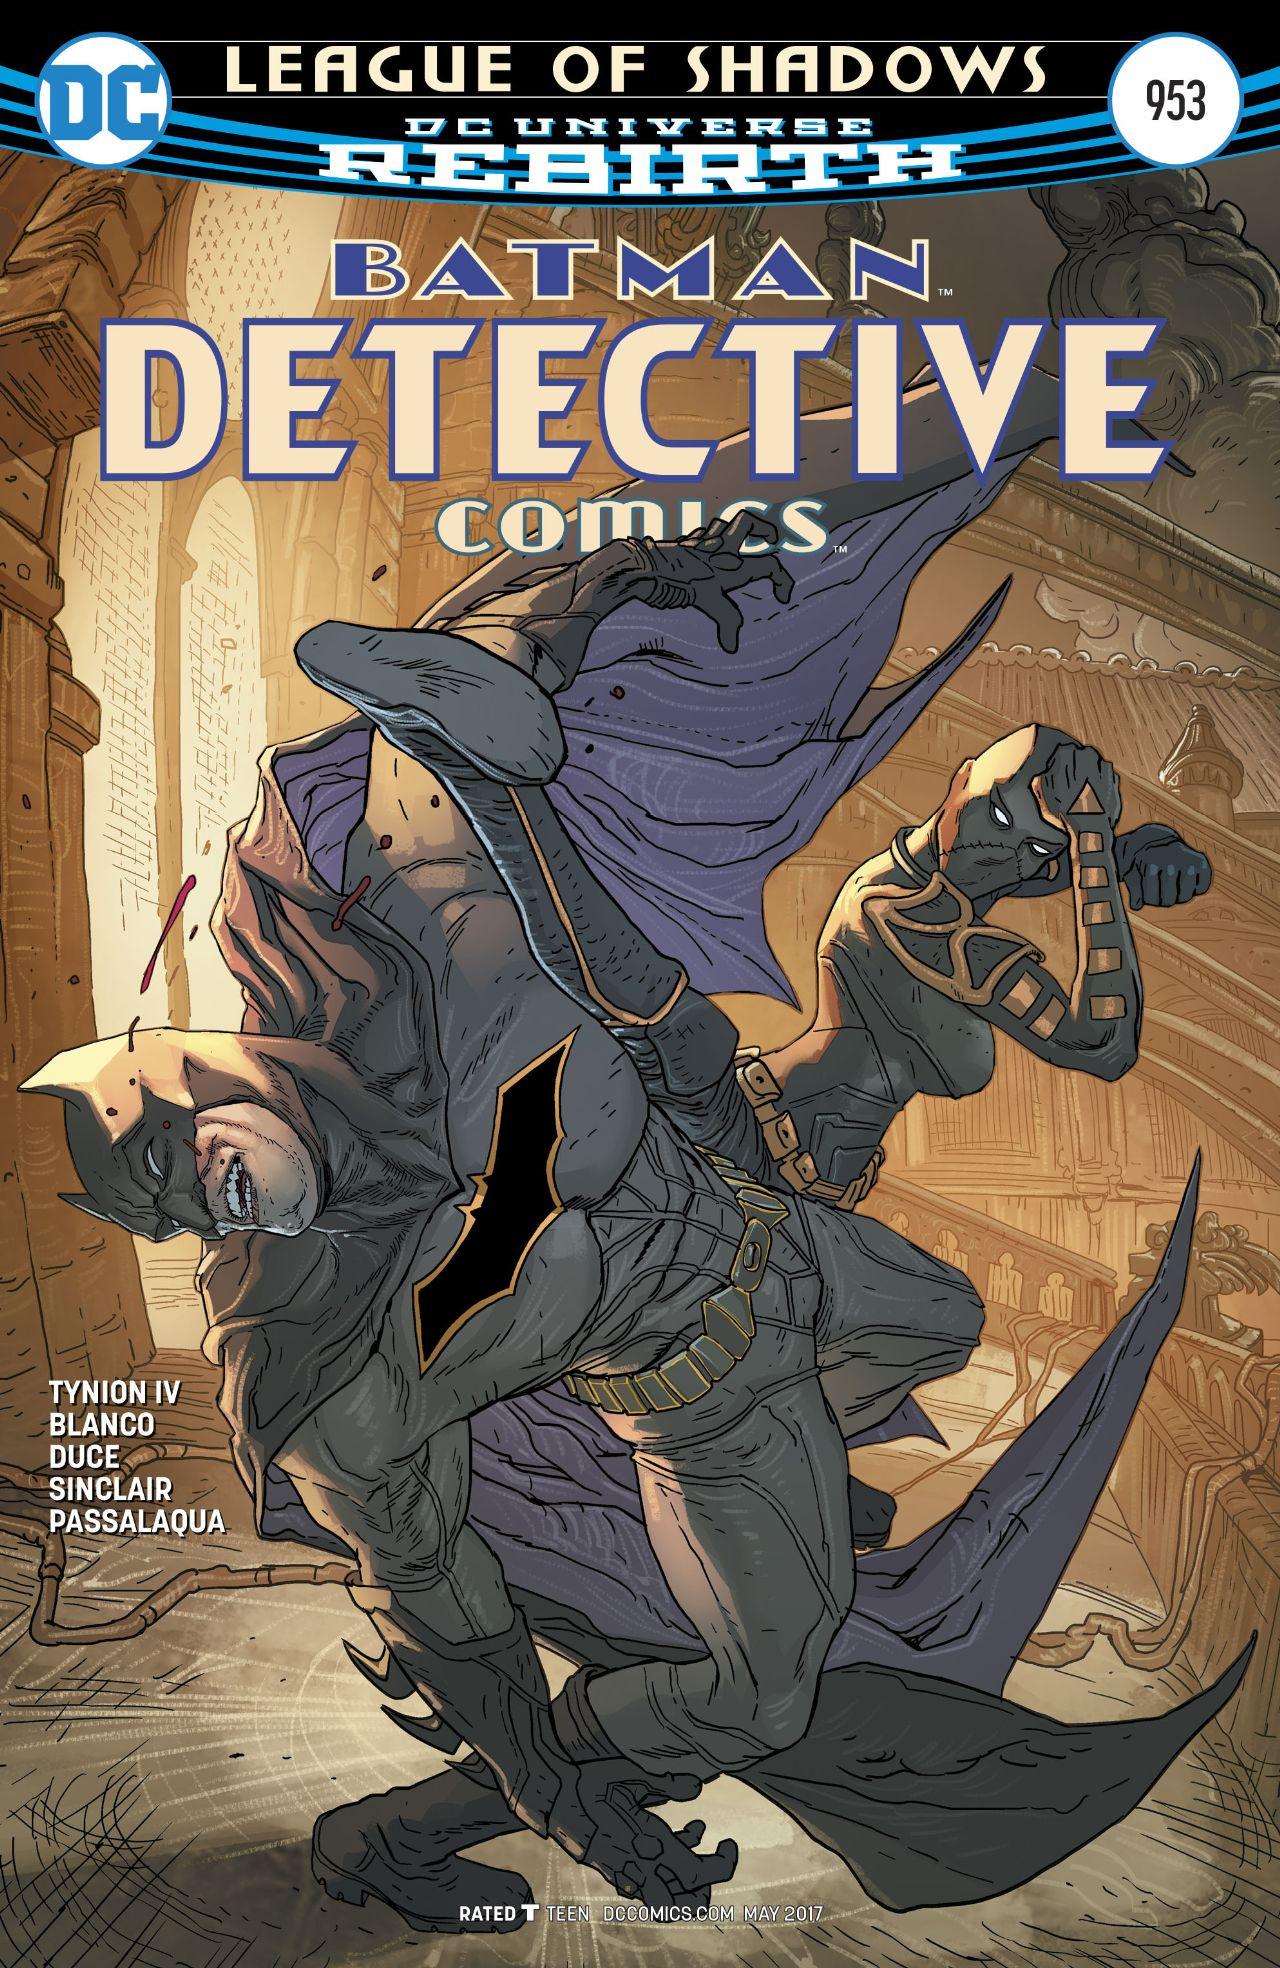 Detective Comics Vol. 1 #953